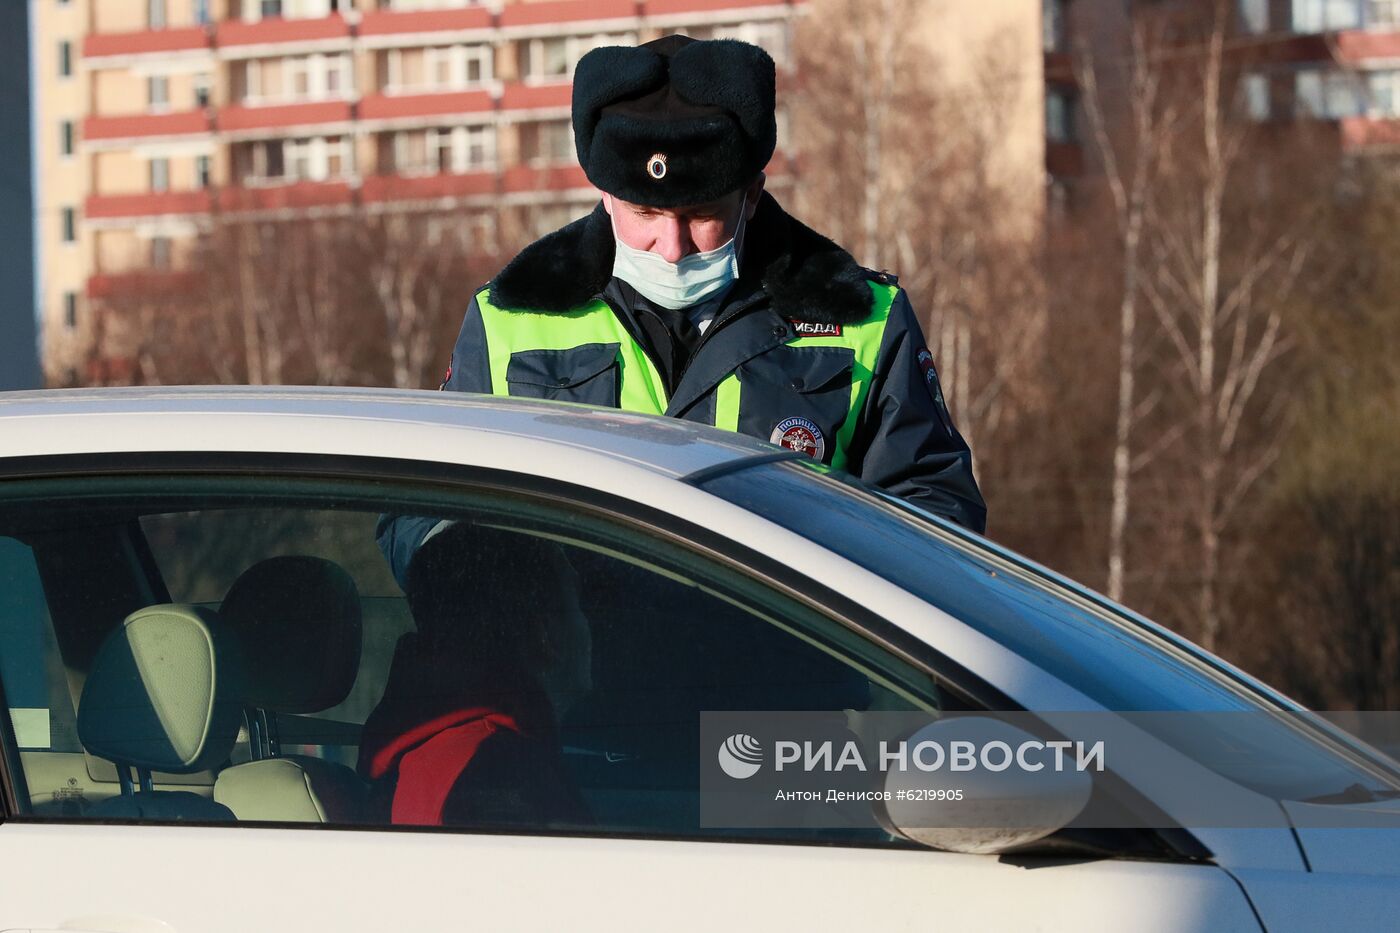 На въезде в Москву сотрудники ГИБДД начали проверять автомобили с регистрационными номерами другого региона